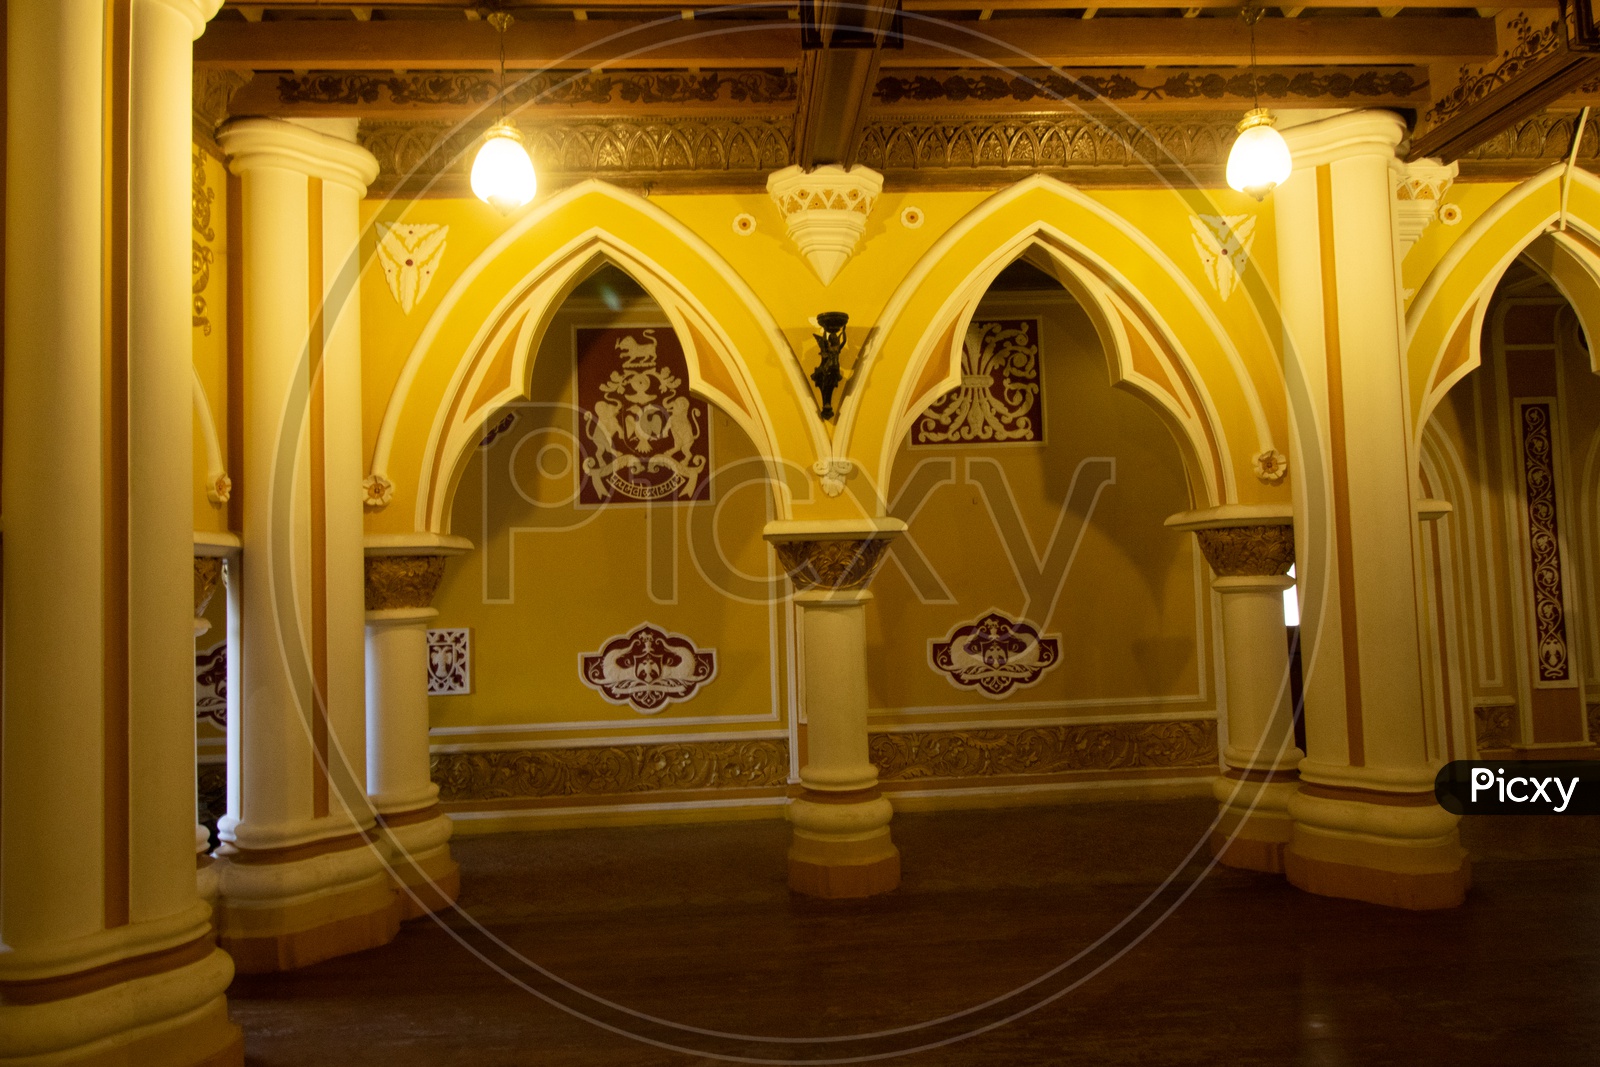 Interiors of Bangalore Palace